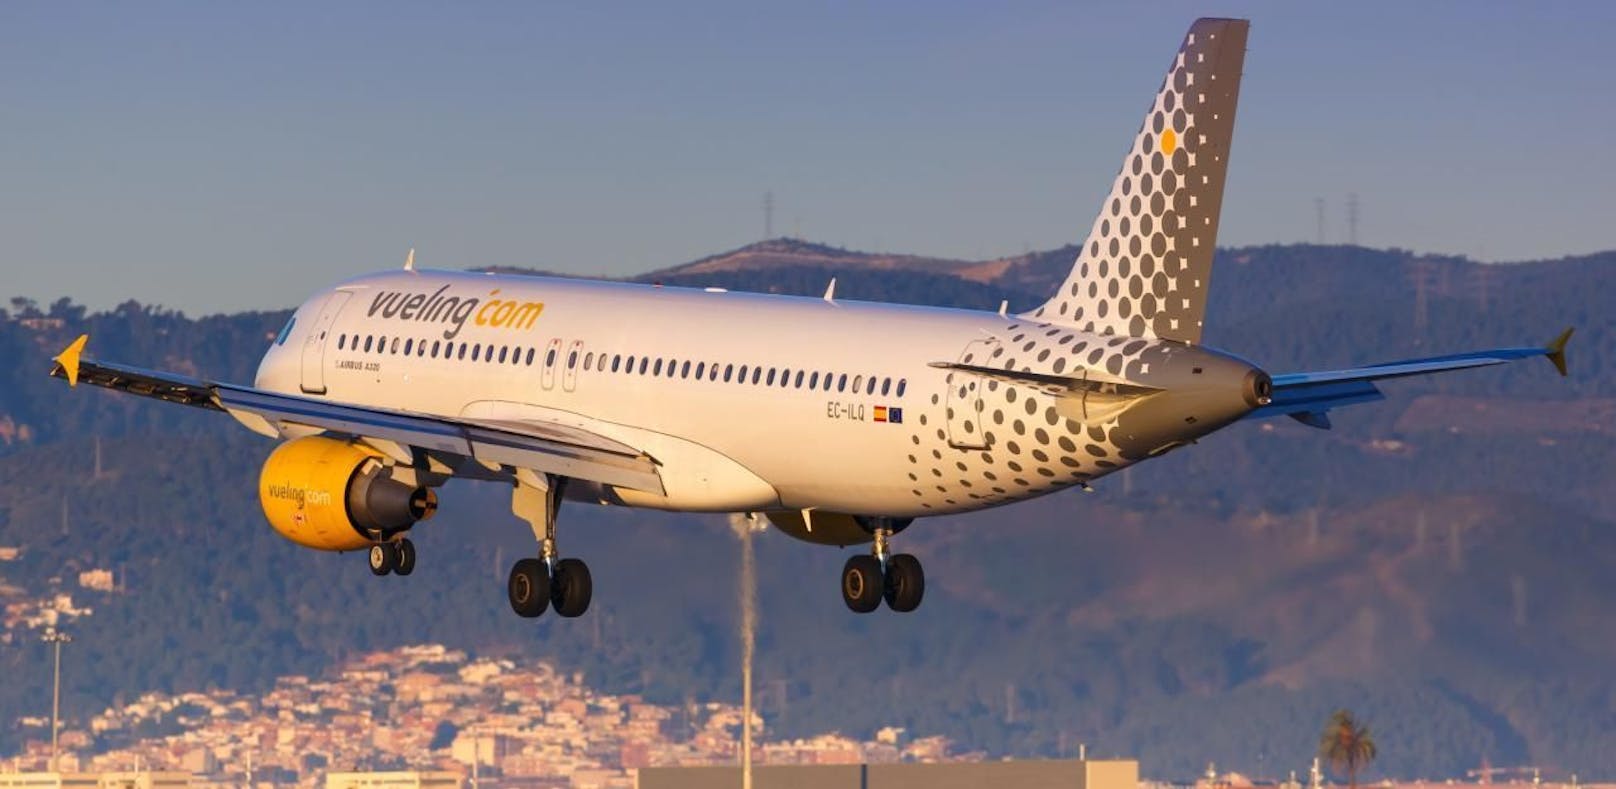 (Symbolbild) Ein Airbus A320 der Fluglinie Vueling am Flughafen von Barcelona.